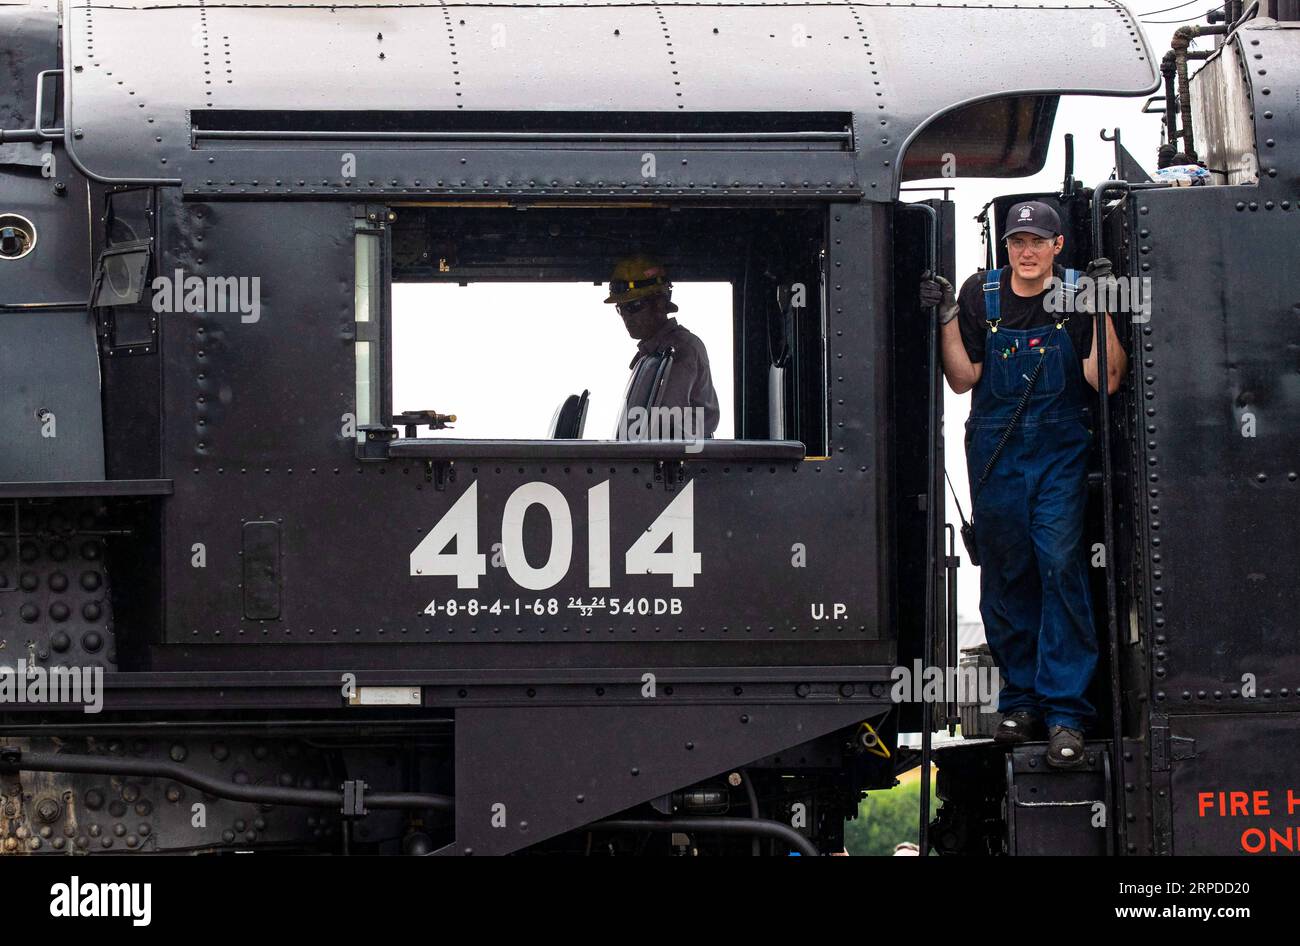 (190731) -- CHICAGO, 31 juillet 2019 (Xinhua) -- les ingénieurs travaillent sur la locomotive à vapeur historique Big Boy n° 4014 à West Chicago, Illinois, États-Unis, le 29 juillet 2019. La locomotive à vapeur Big Boy No. 4014 a passé trois jours à West Chicago lors d'une tournée pour commémorer le 150e anniversaire de l'achèvement du chemin de fer transcontinental. (Photo de Joel Lerner/Xinhua) U.S.-CHICAGO-TRANSCONTINENTAL RAILROAD-ANNIVERSARY PUBLICATIONxNOTxINxCHN Banque D'Images